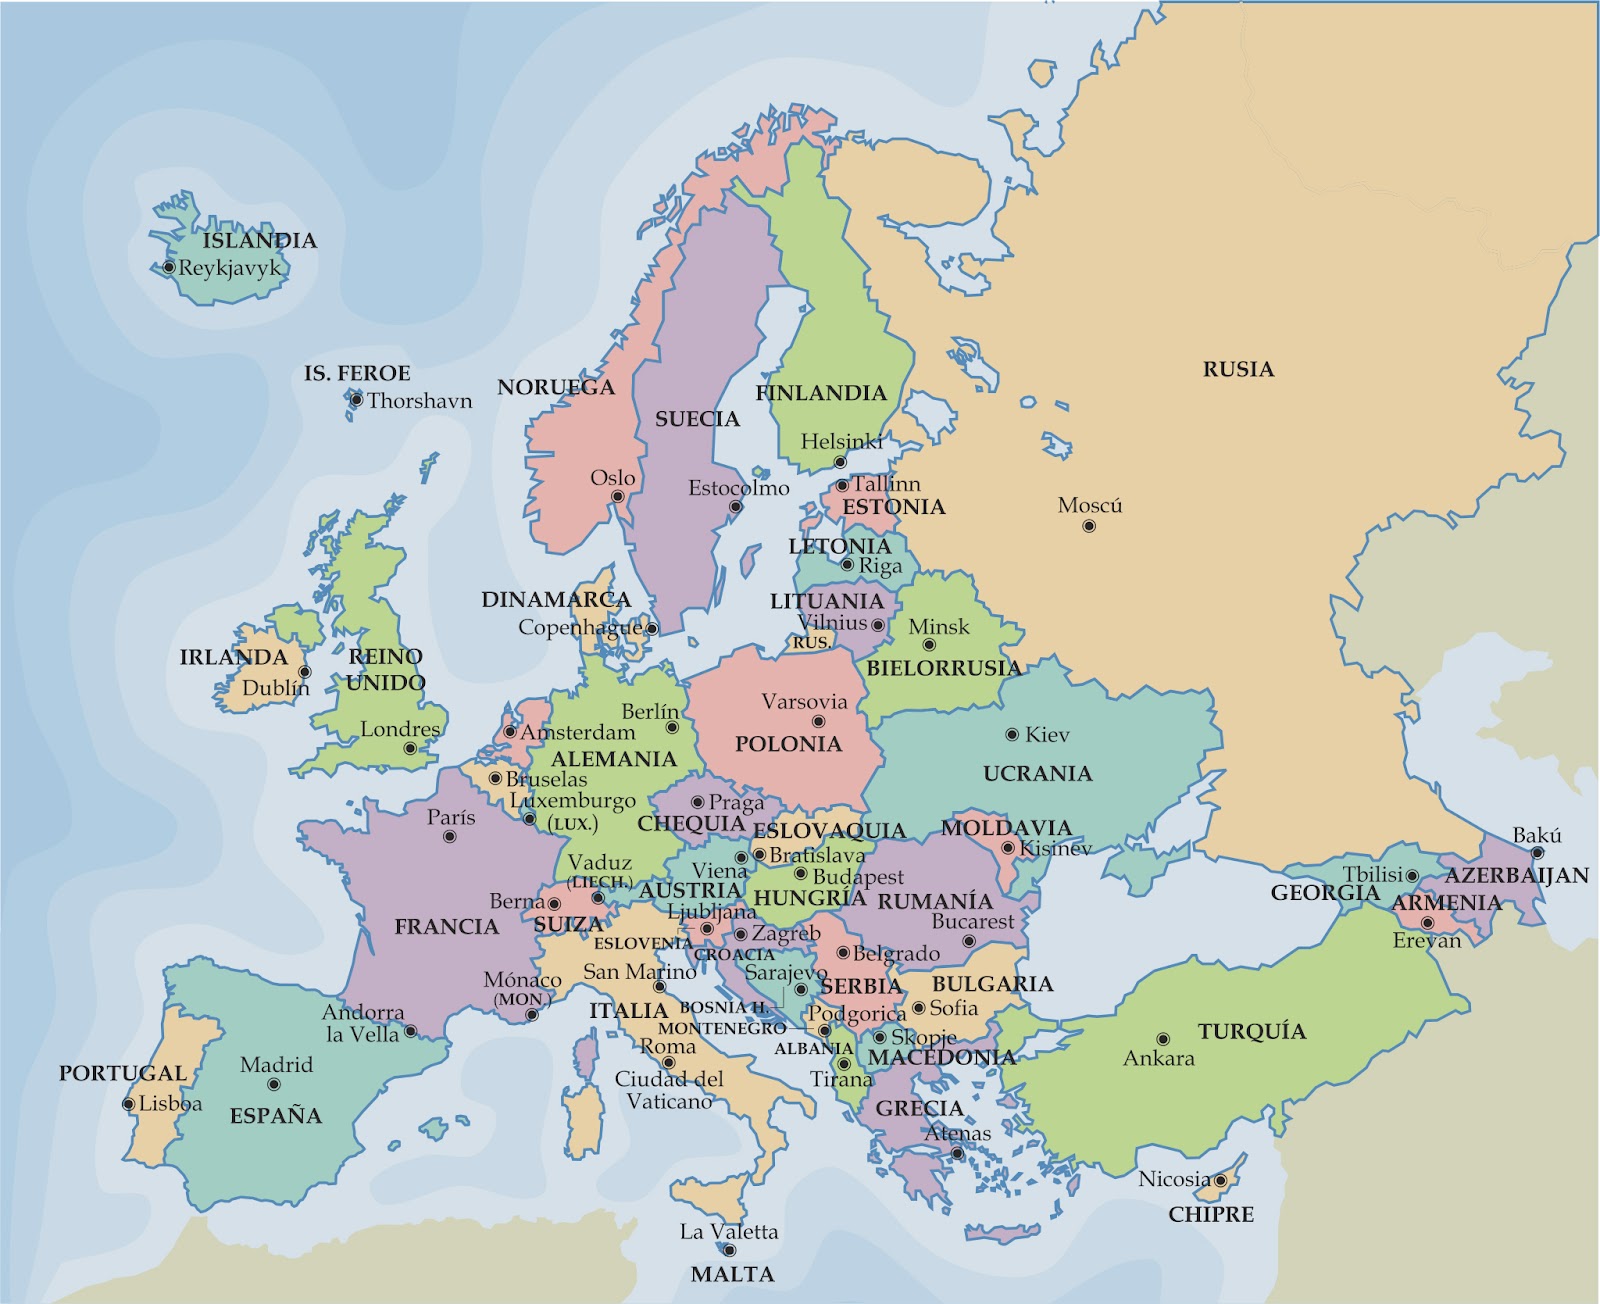 Blog de Sociales del IES Sierra de Mijas : Repaso mapa político Europa